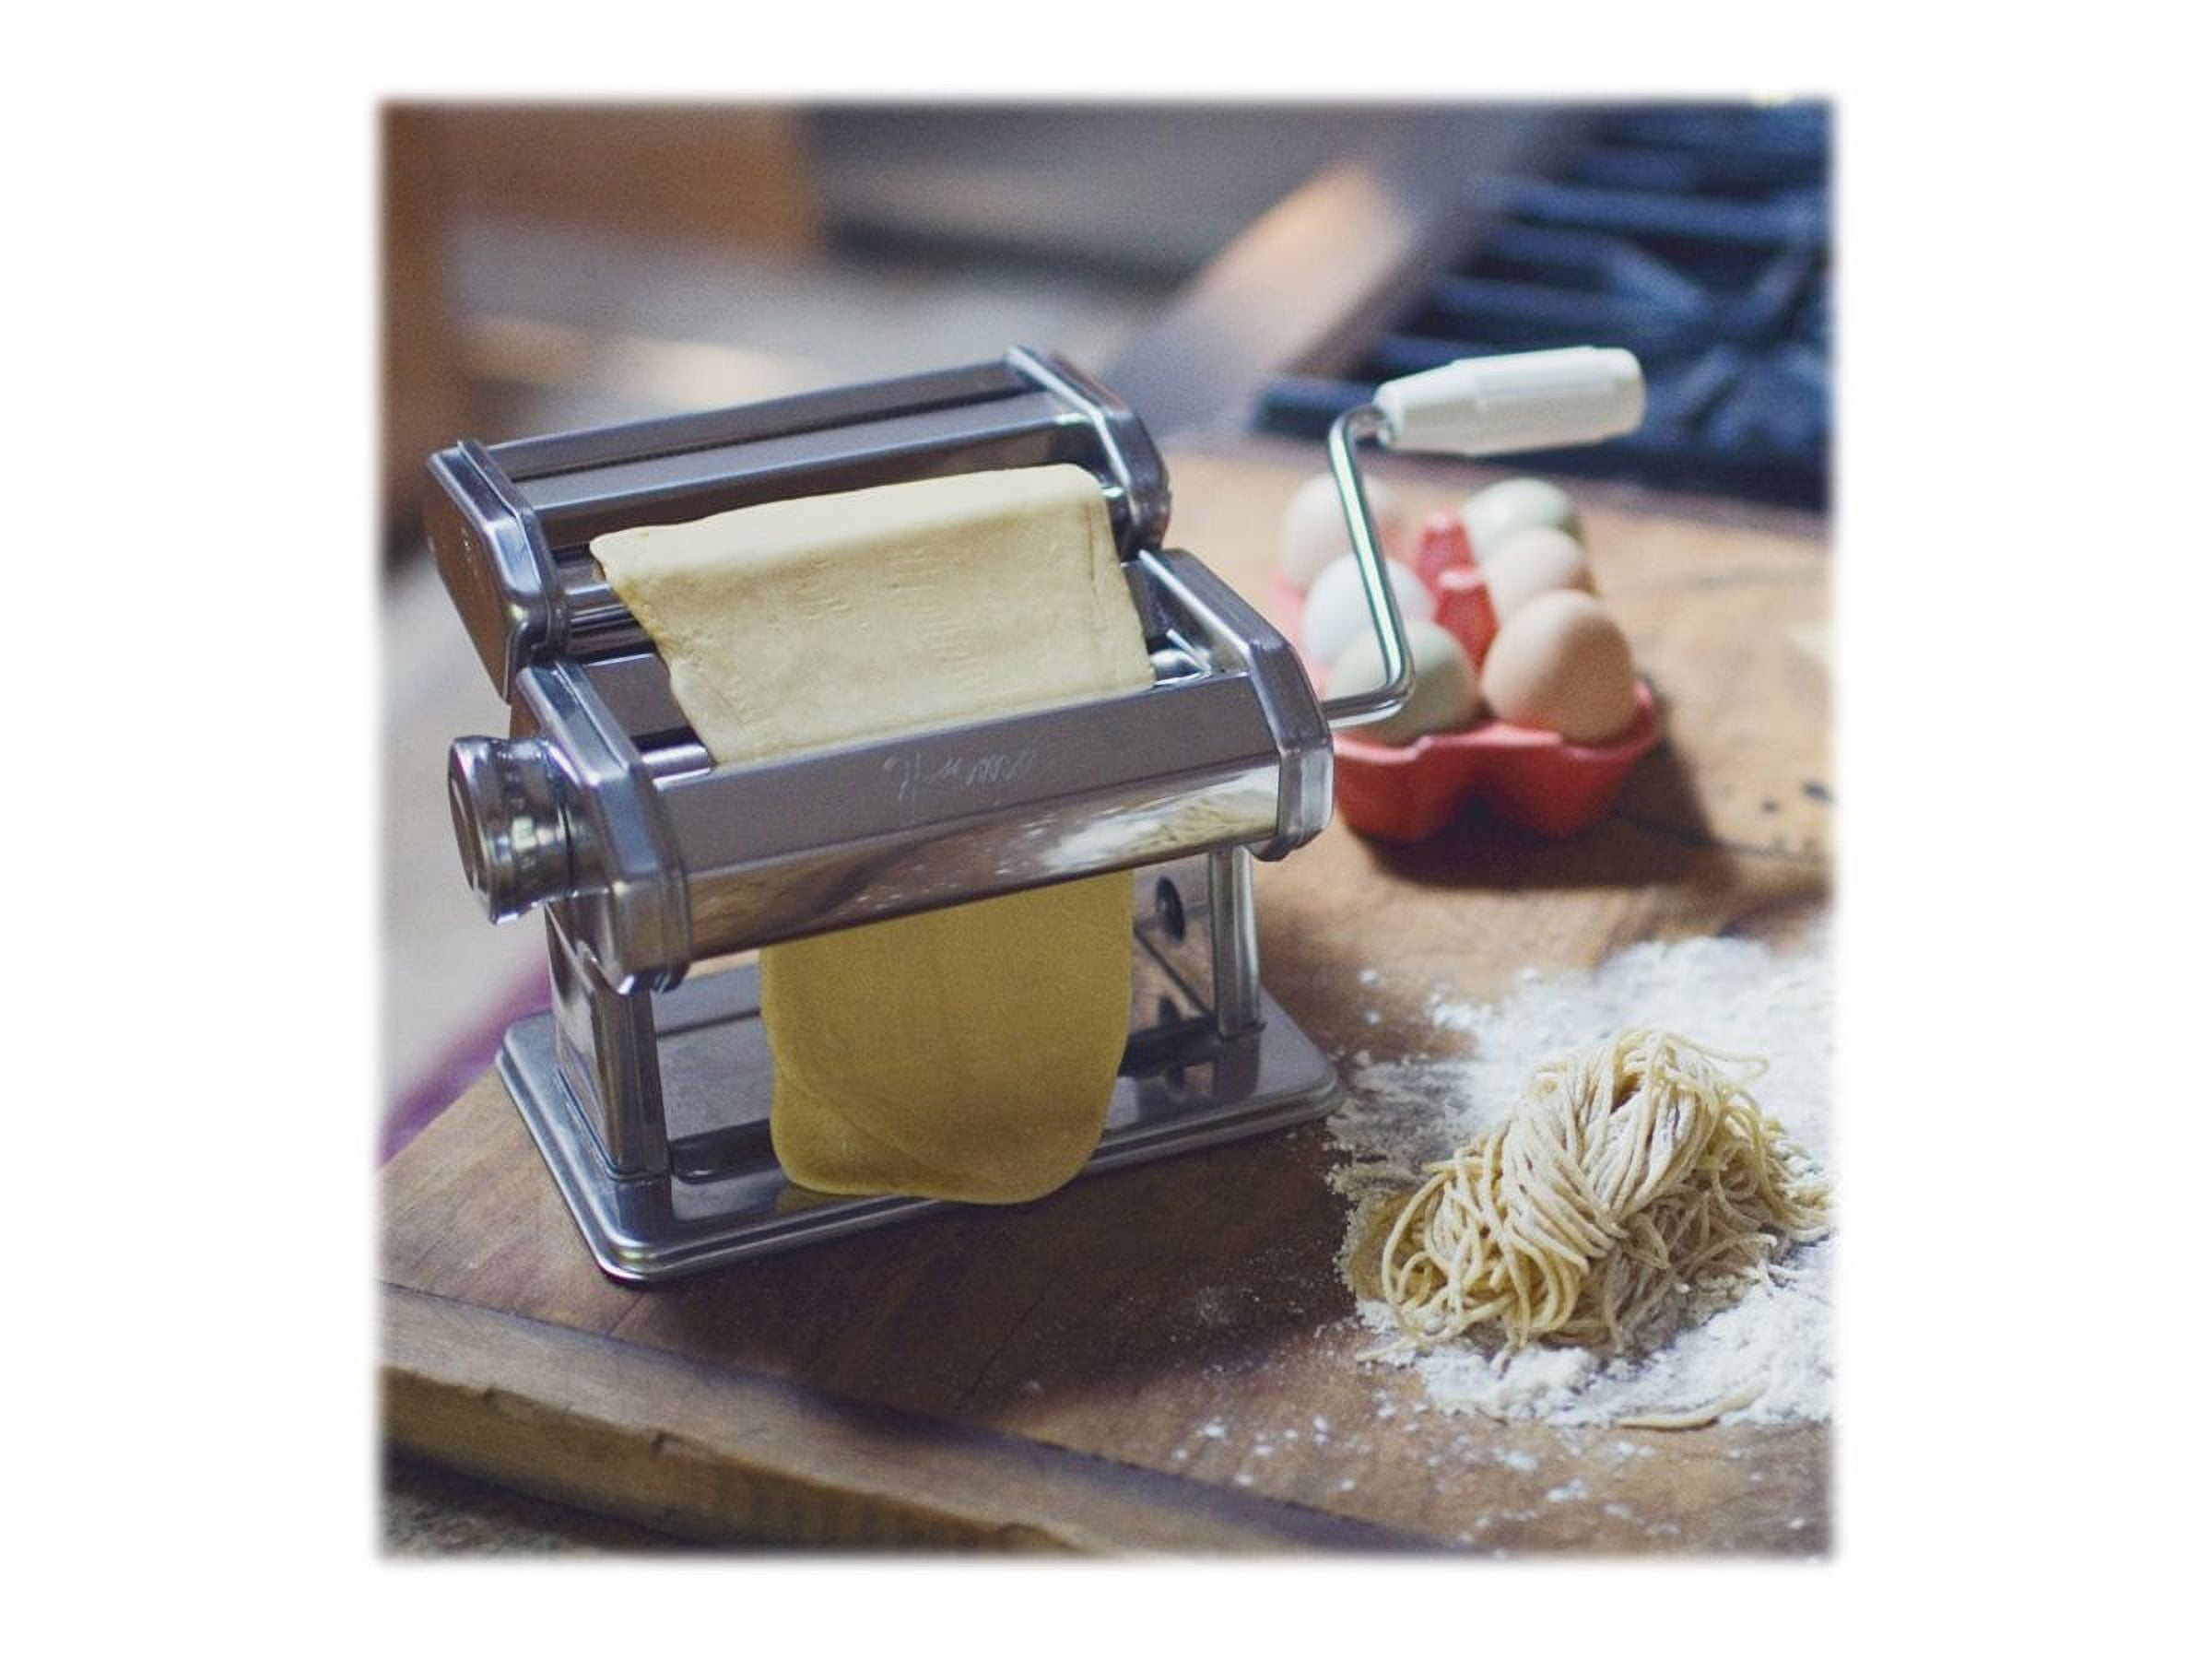 Cuisinart Pasta Roller & Cutter Attachments - Bed Bath & Beyond - 12766223